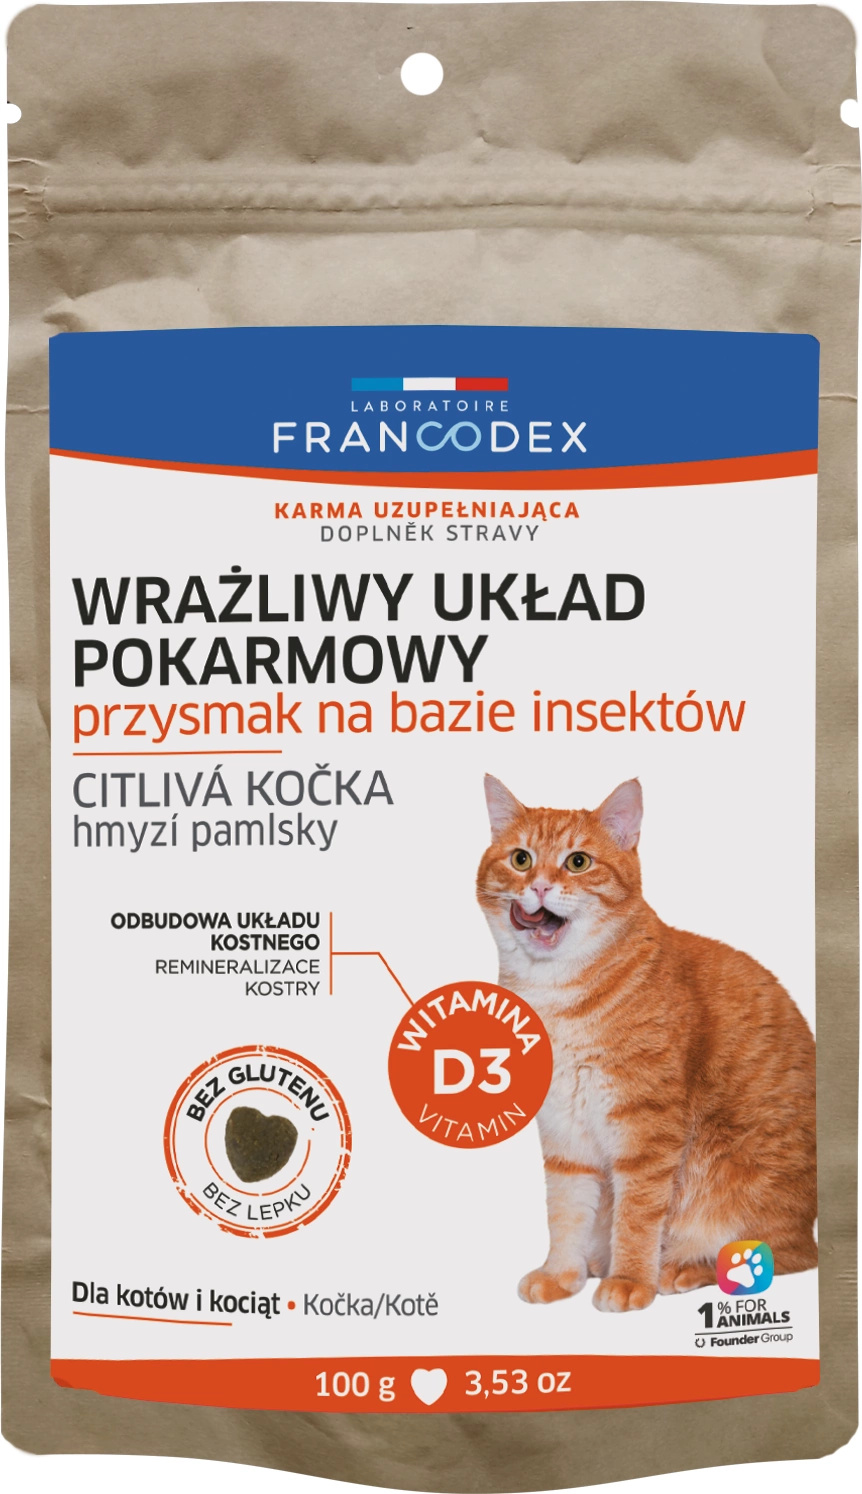 Francodex Sensible Przysmaki na wrażliwy układ pokarmowy dla kota 100g